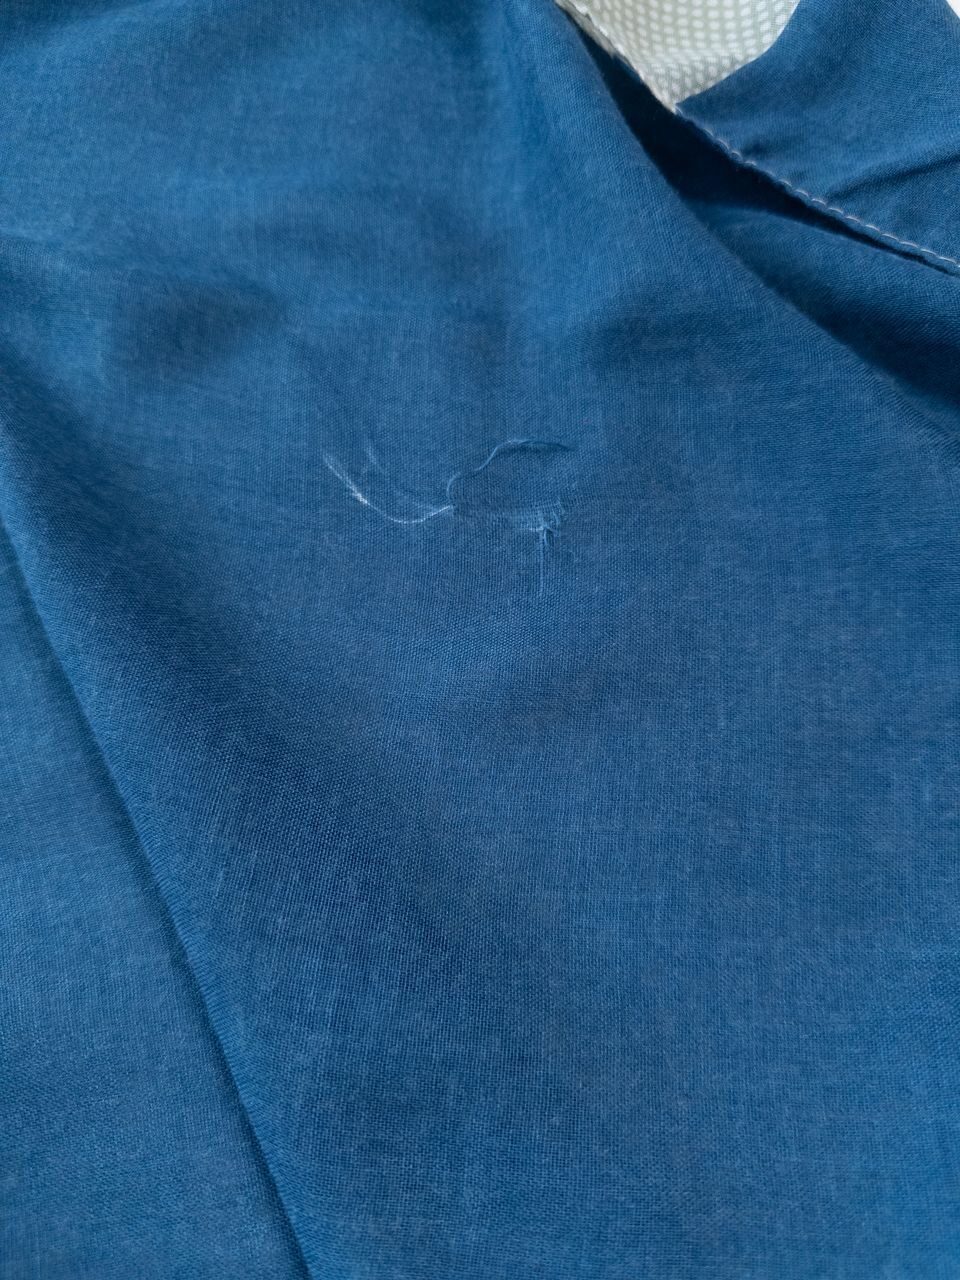 Шарф-палантин легкий цвет мятный/синий размер 110х160 см Catbalou (имеется незначительная затяжка)